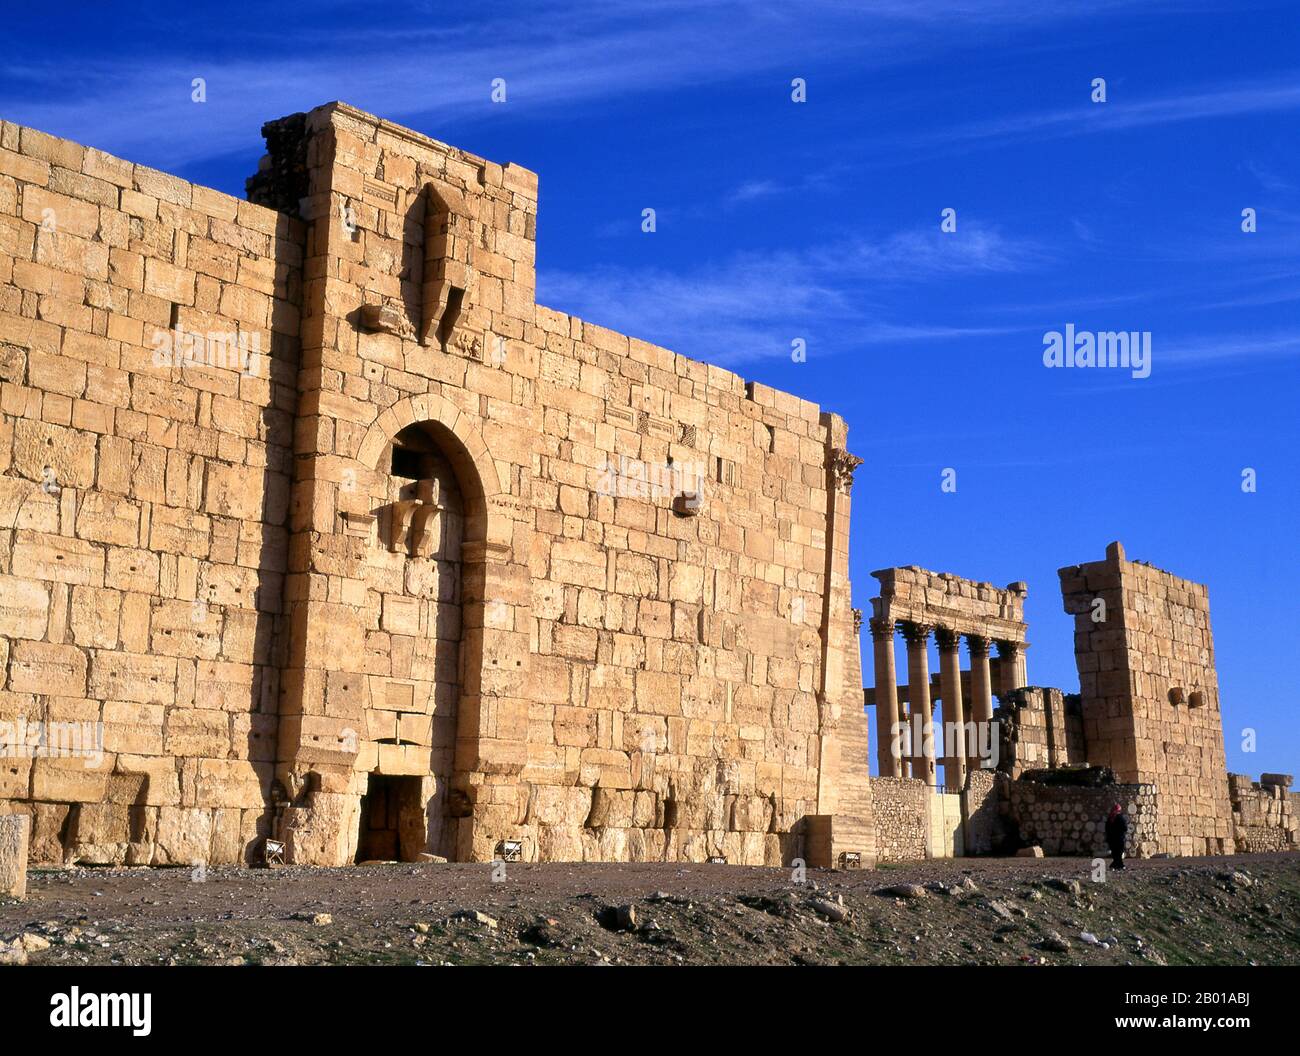 Siria: Il Tempio di Bel, Palmyra. Il Tempio di Bel, consacrato al dio Semitico Bel, adorò a Palmyra come Malakbel, costituì il centro della vita religiosa a Palmyra e fu dedicato nel 32 d.C. Palmyra era un'antica città in Siria. Era una città importante nella Siria centrale, situata in un'oasi 215 km a nord-est di Damasco e 180 km a sud-ovest dell'Eufrate a Deir ez-Zor. Era stata a lungo una città carovana vitale per i viaggiatori che attraversavano il deserto siriano ed era conosciuta come la sposa del deserto. È anche noto con il suo nome semitico Tadmor, Tadmur o Tudmur. Foto Stock